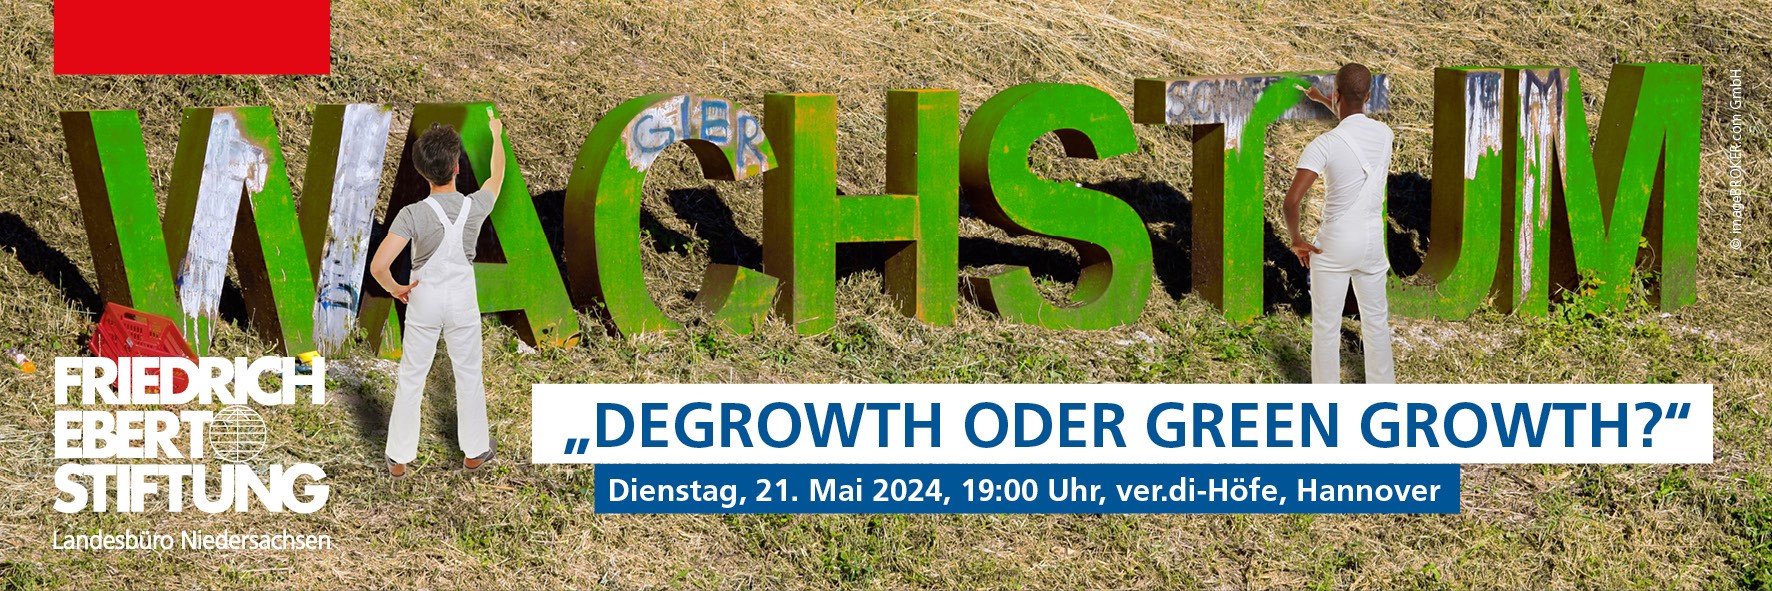 Die Grenzen des Wachstums – degrowth oder green growth?